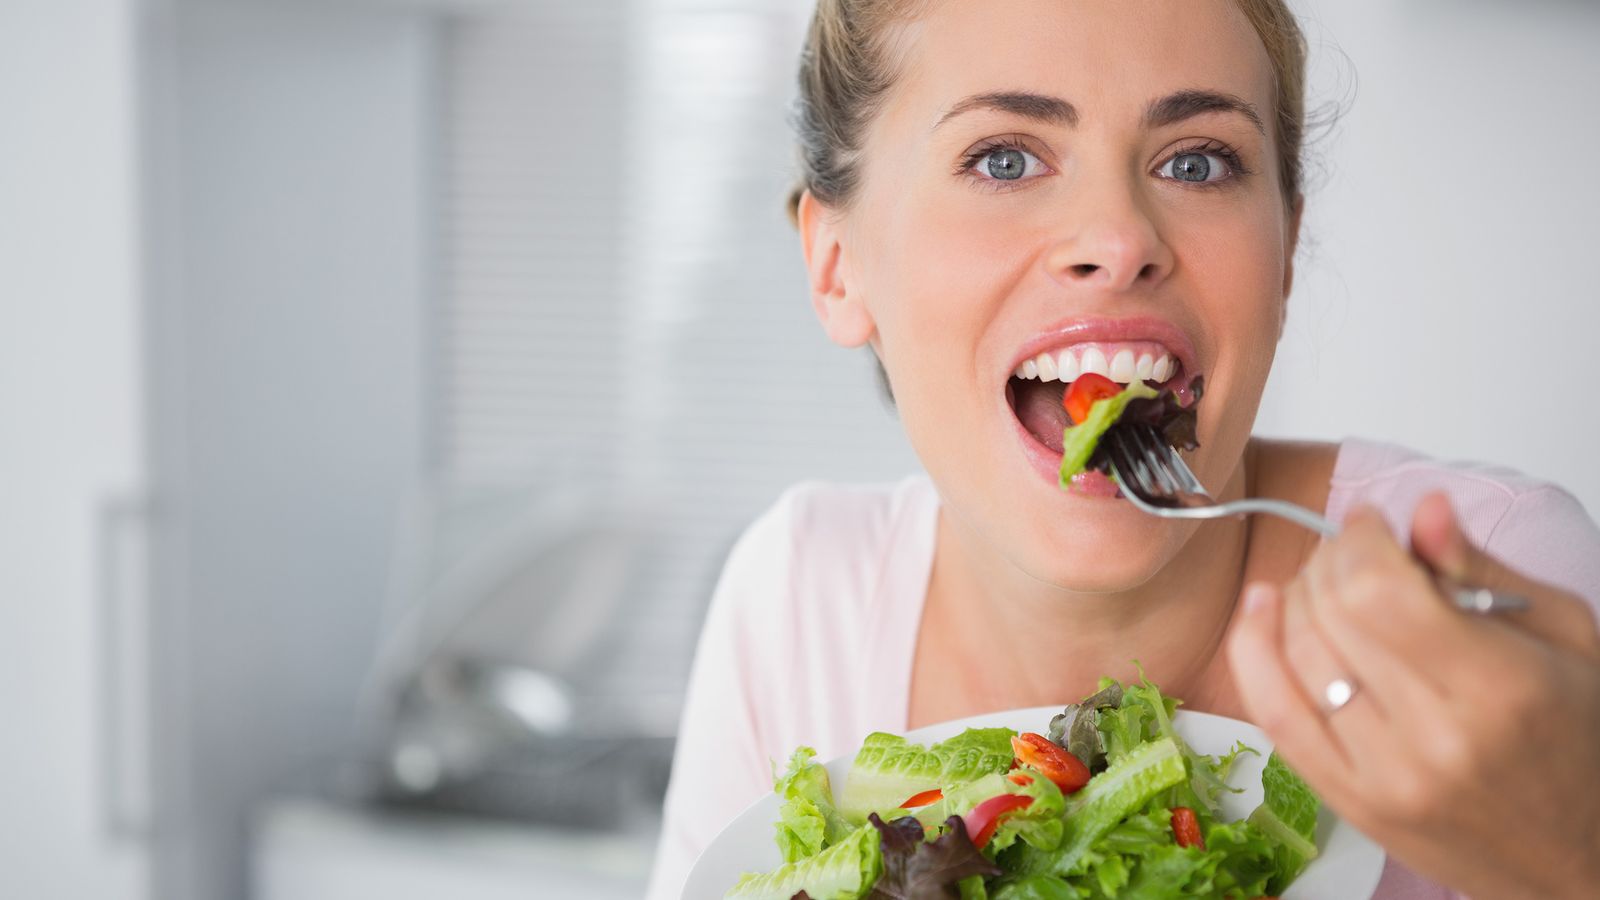 Frau isst einen grünen Salat